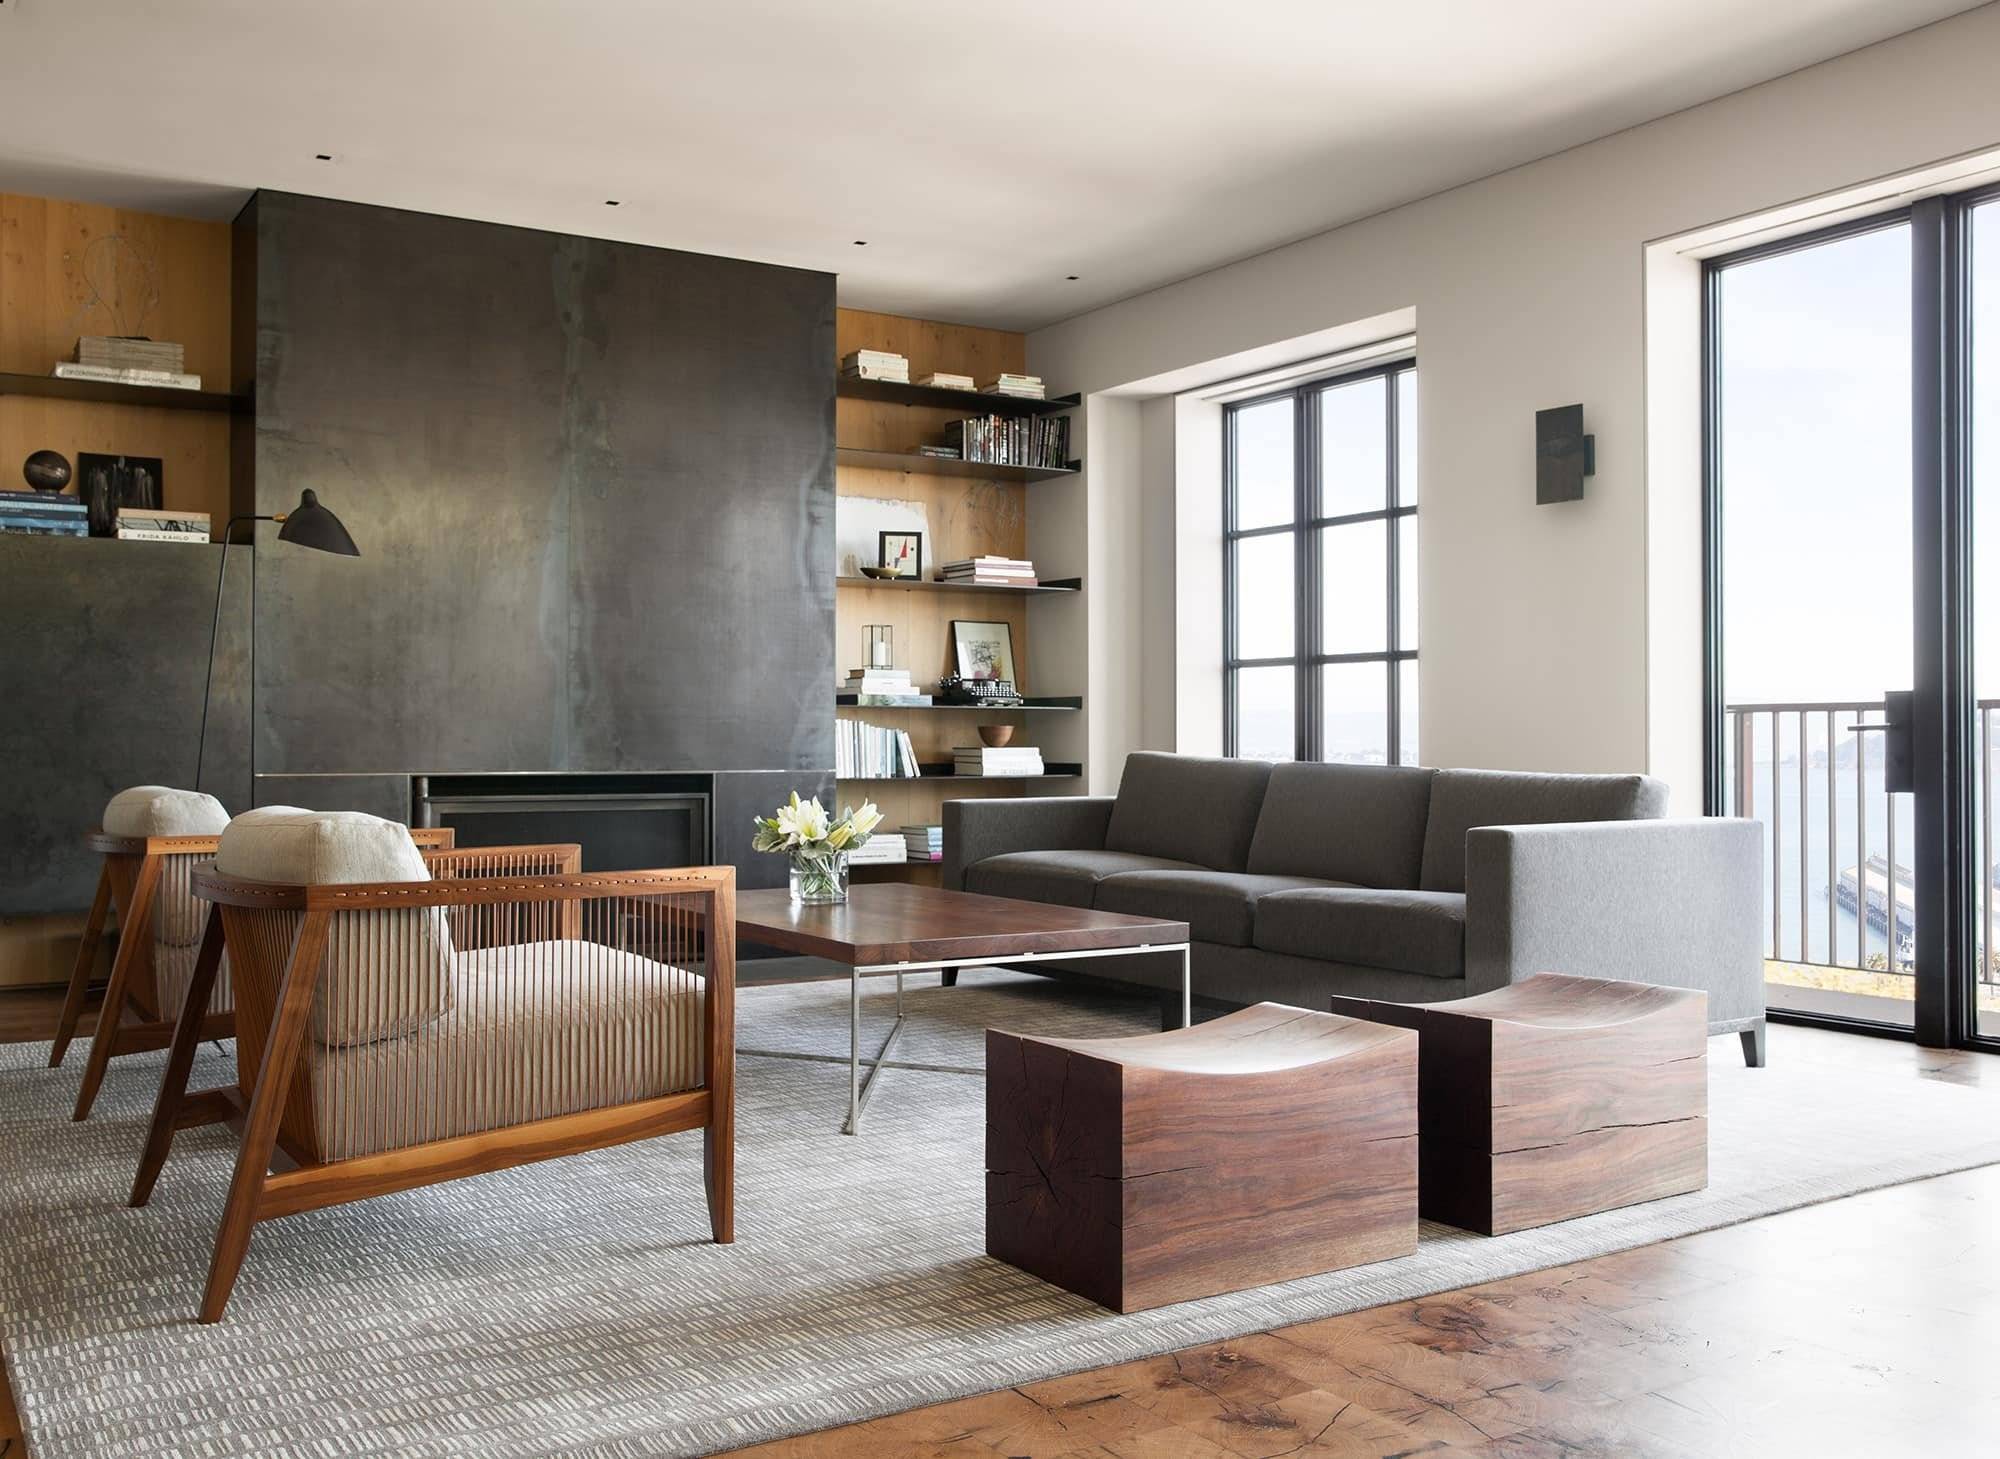 Cтили мебели в интерьере — фото ярких стилей с современным дизайном!